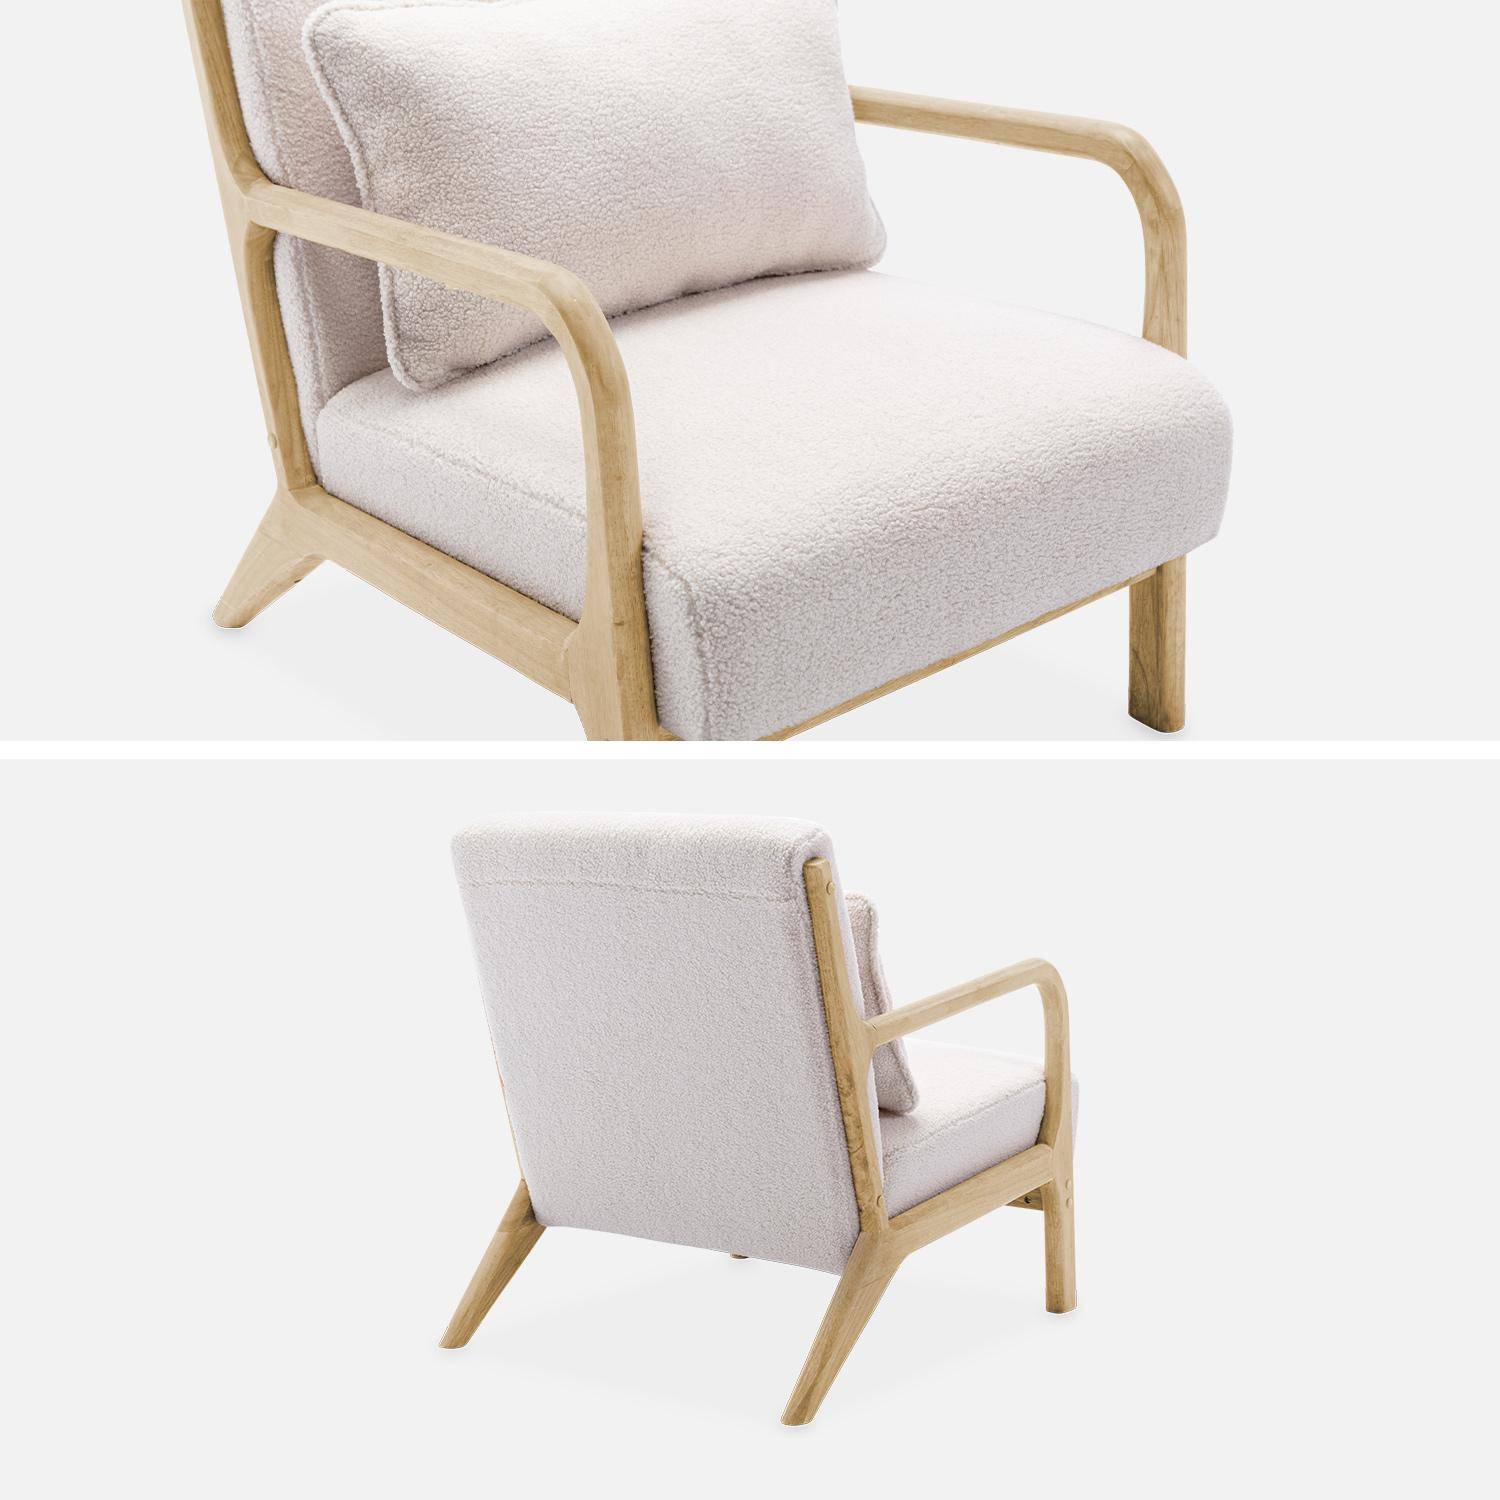 Poltrona di design in legno e tessuto bouclé, 1 seduta fissa diritta, gambe a compasso scandinave, beige Photo6